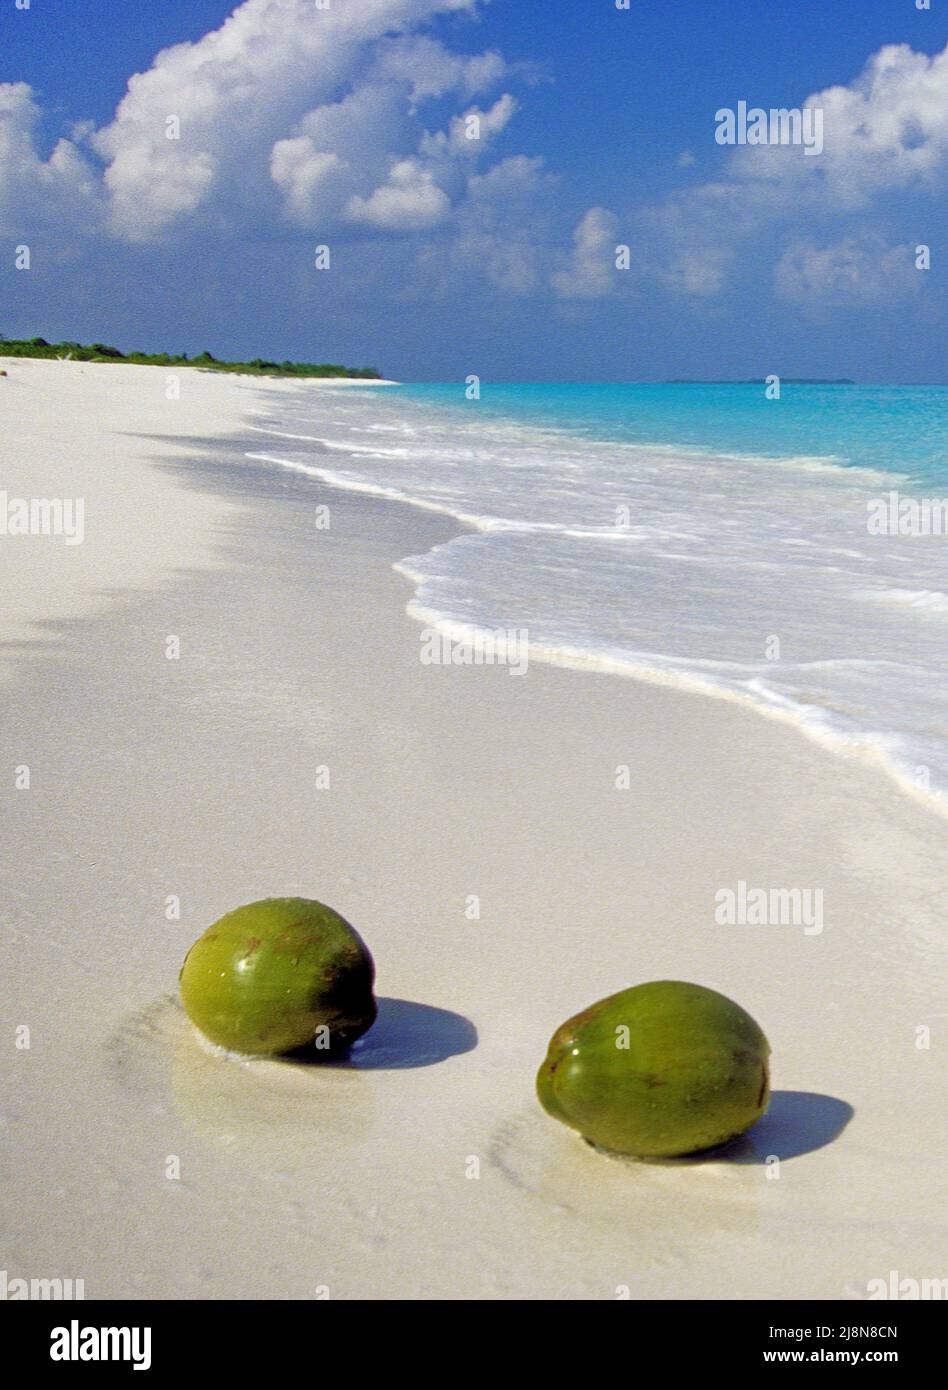 Noix de coco lavées à l'astre sur la plage d'une petite île non habitée, atoll de Laviyani, Maldives, océan Indien, Asie Banque D'Images